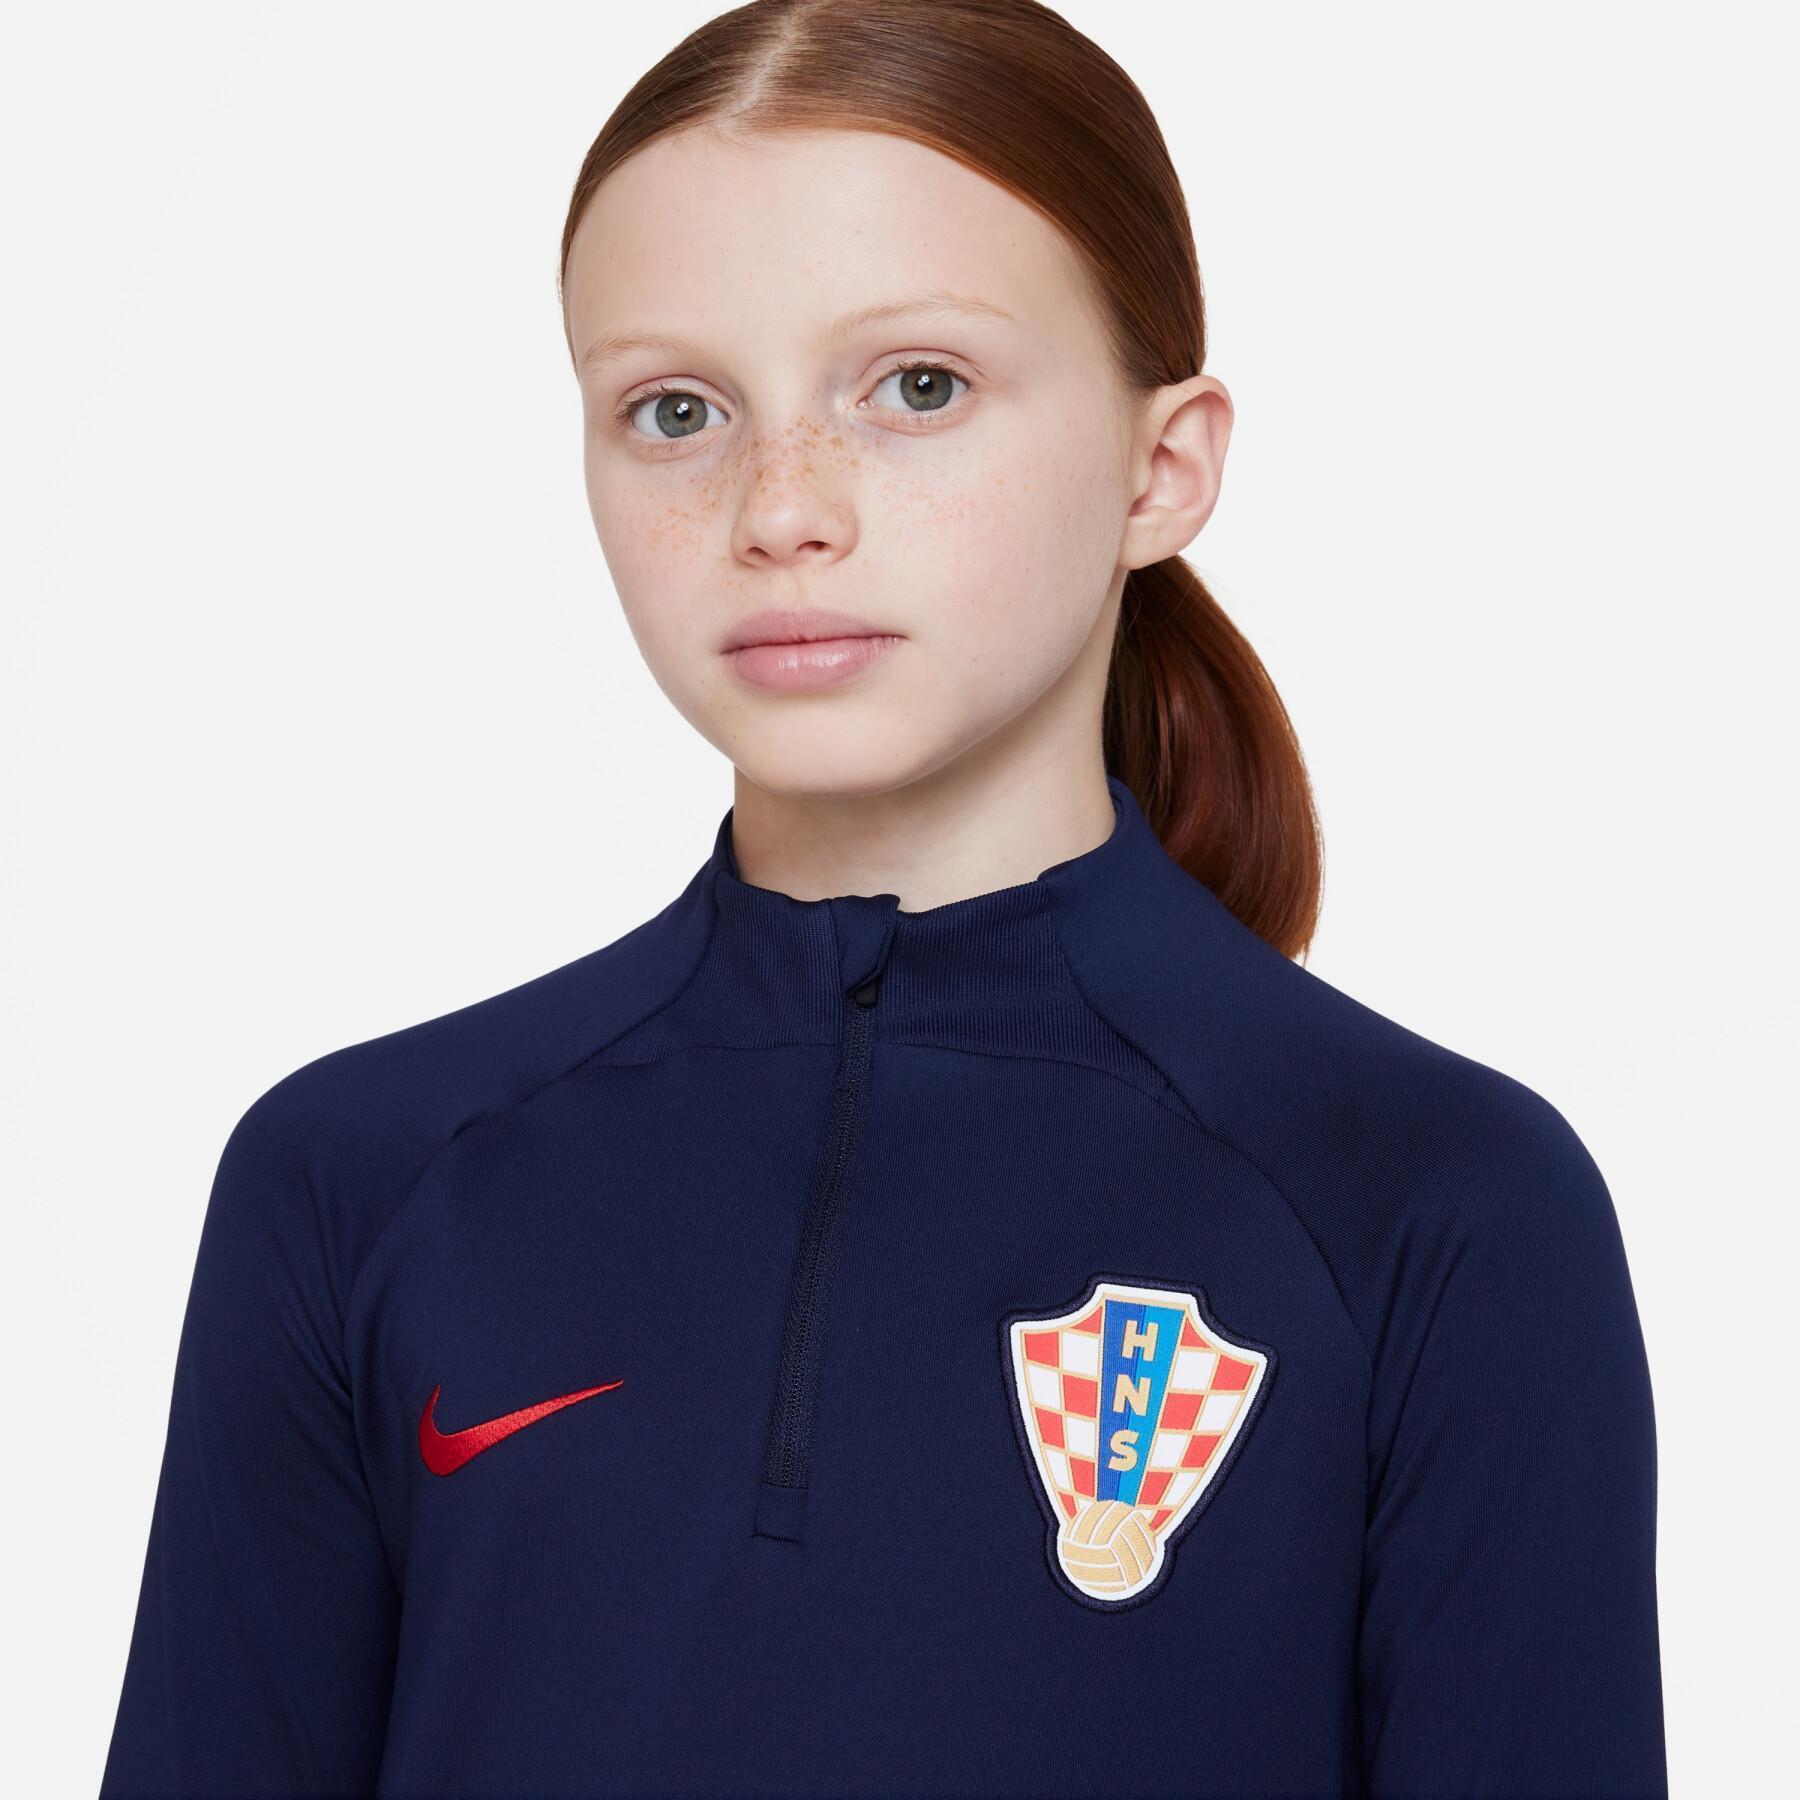 Koszulka treningowa dla dzieci na Mistrzostwa Świata 2022 Croatie